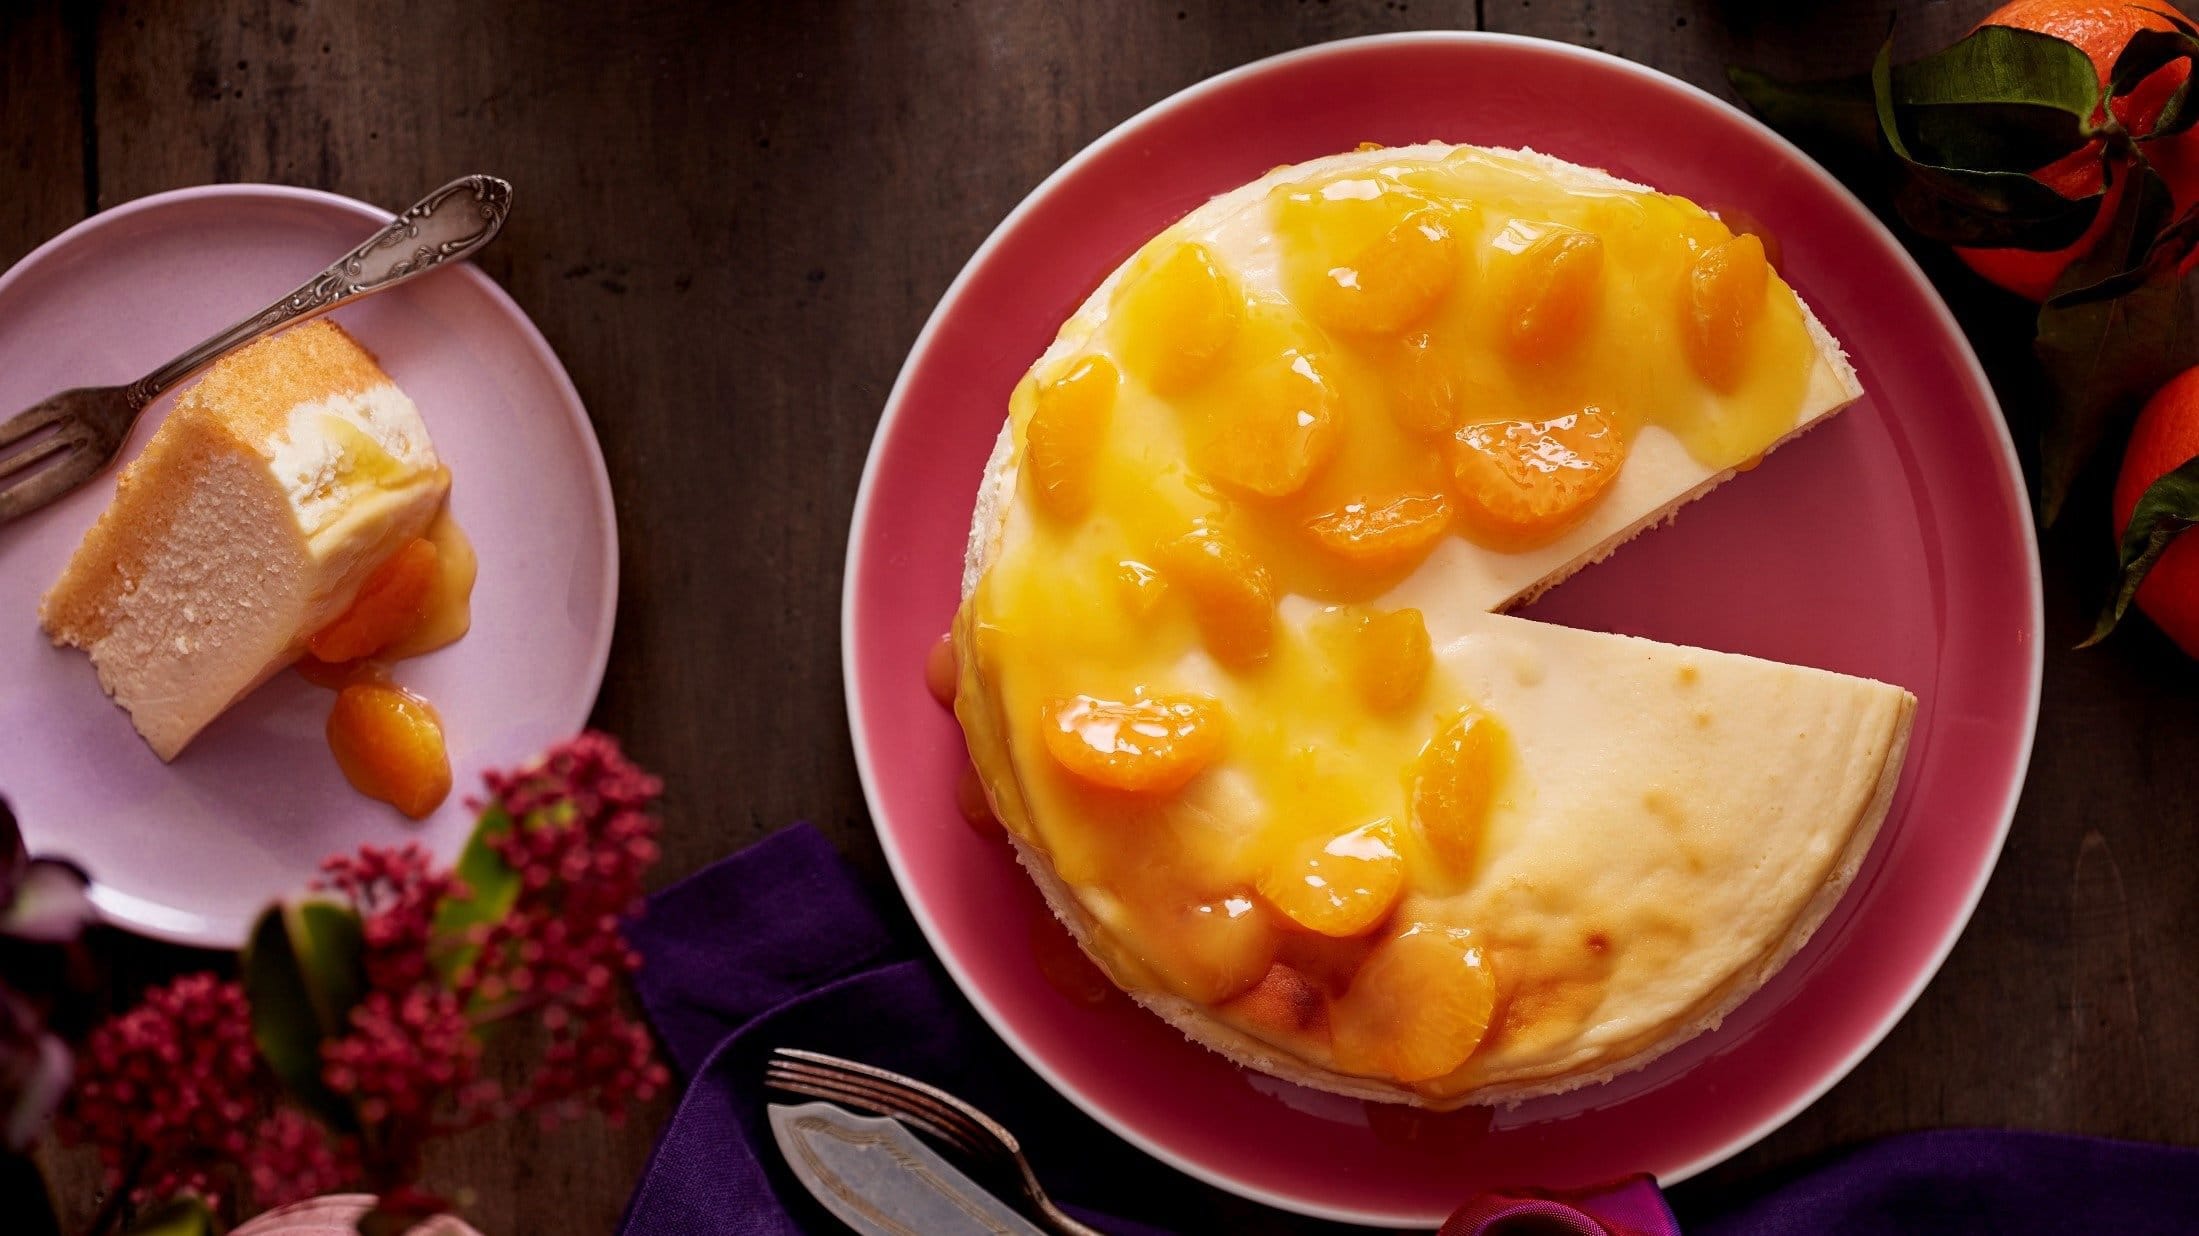 Unser Mandarinen-Cheesecake liegt angeschnitten auf einem Teller. Ein einzelnes Stück liegt auf einem zweiten Teller links daneben.